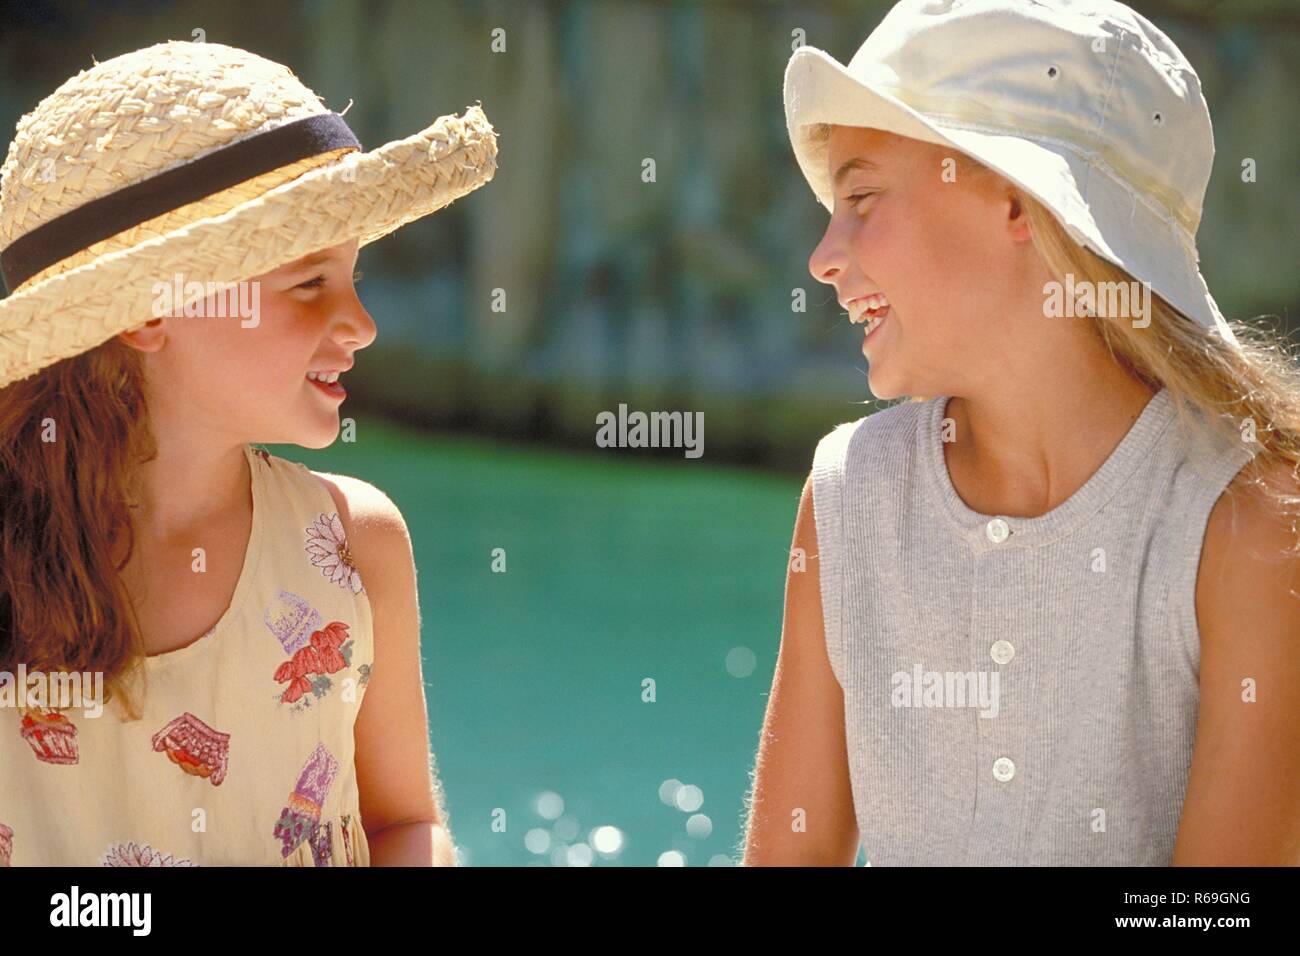 All'aperto, Nahaufnahme, Profil von zwei sich unterhaltenden lachenden Maedchen mit langen Haaren, 8-10 Jahre alt, bekleidet mit hellen Sommerkleidern und Hueten am Rand eines Schwimmbeckens Foto Stock